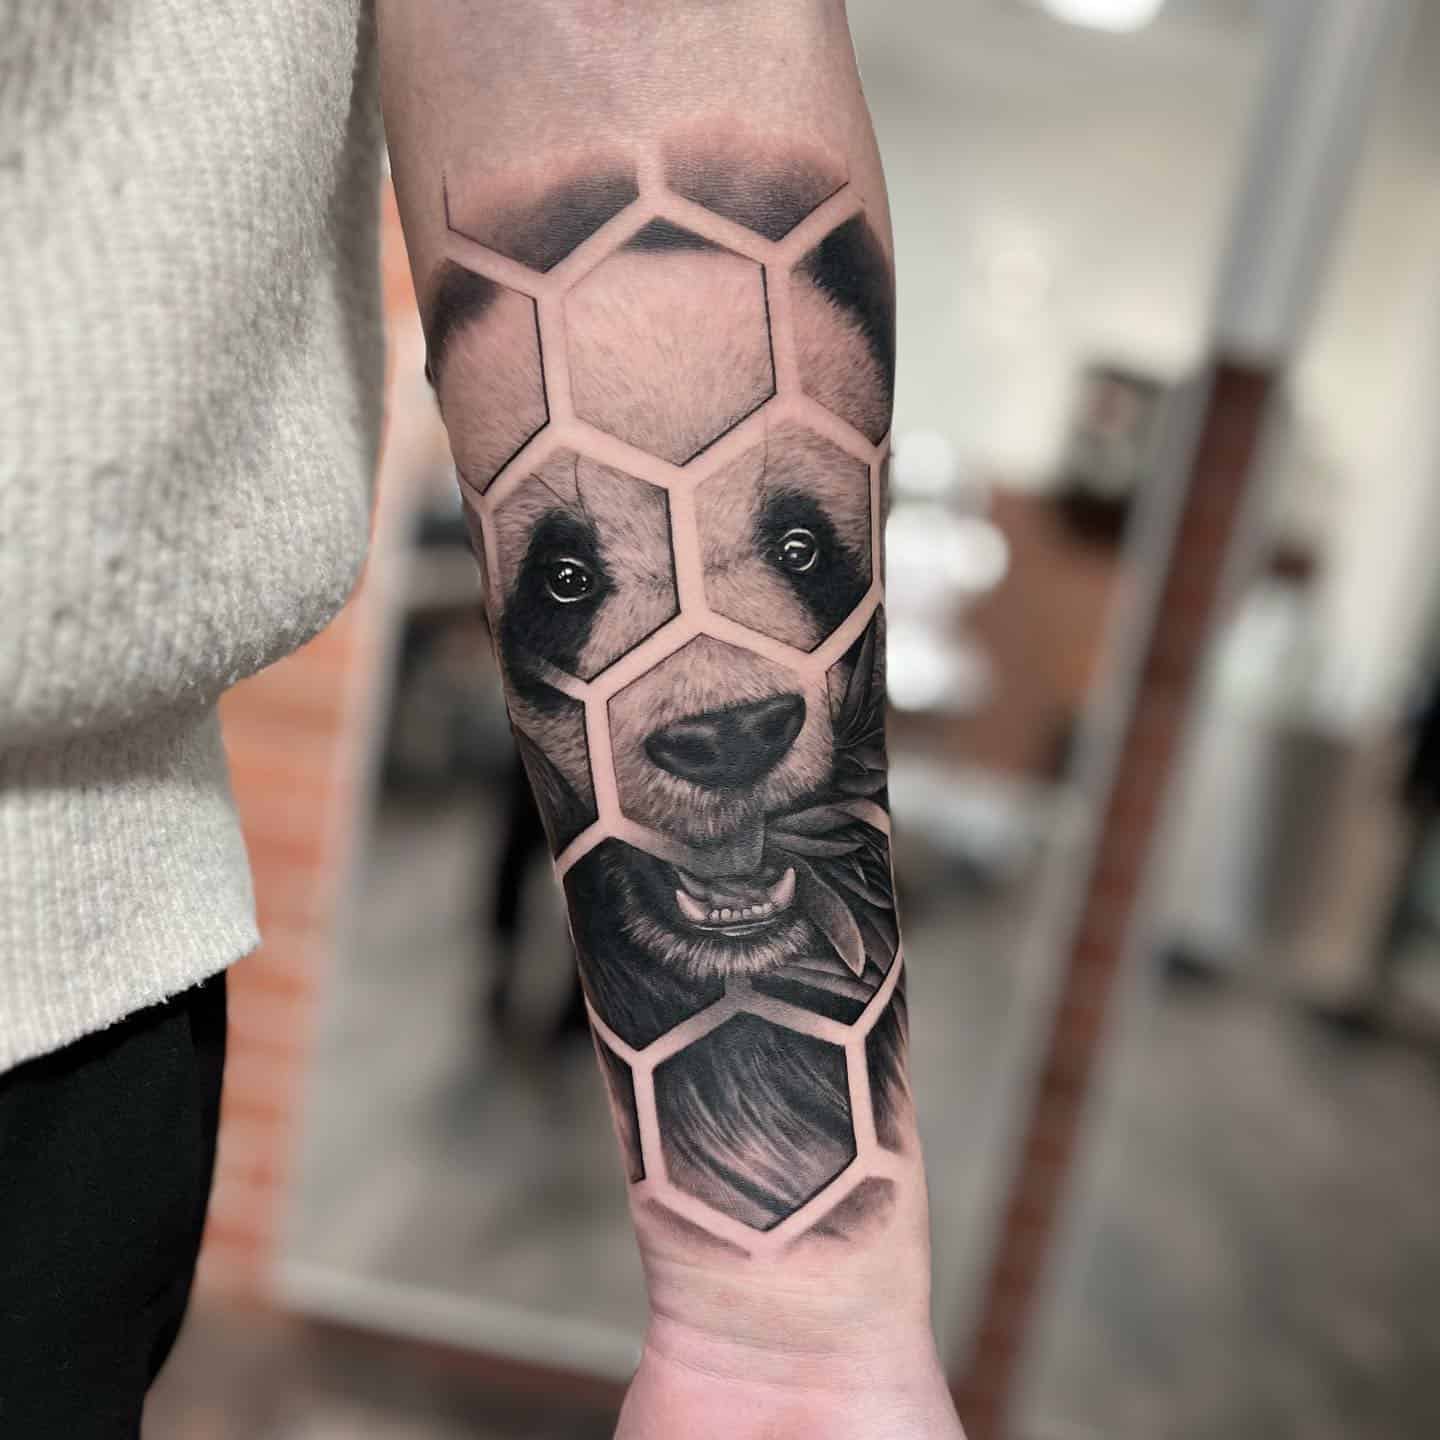 Panda tattoo by skulltattoosbadvilbel